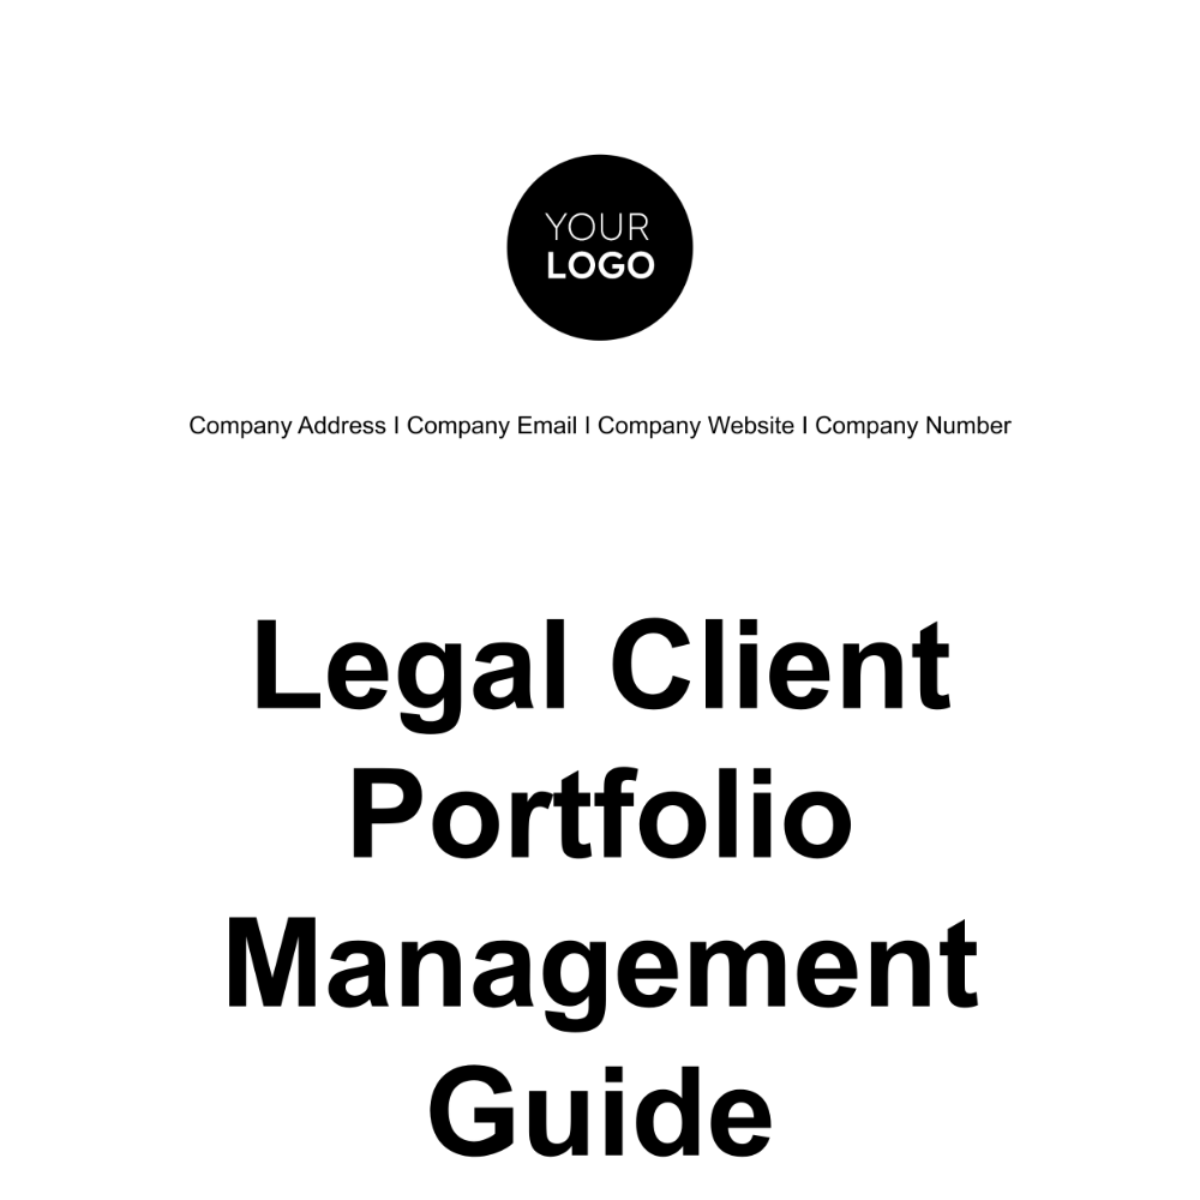 Free Legal Client Portfolio Management Guide Template